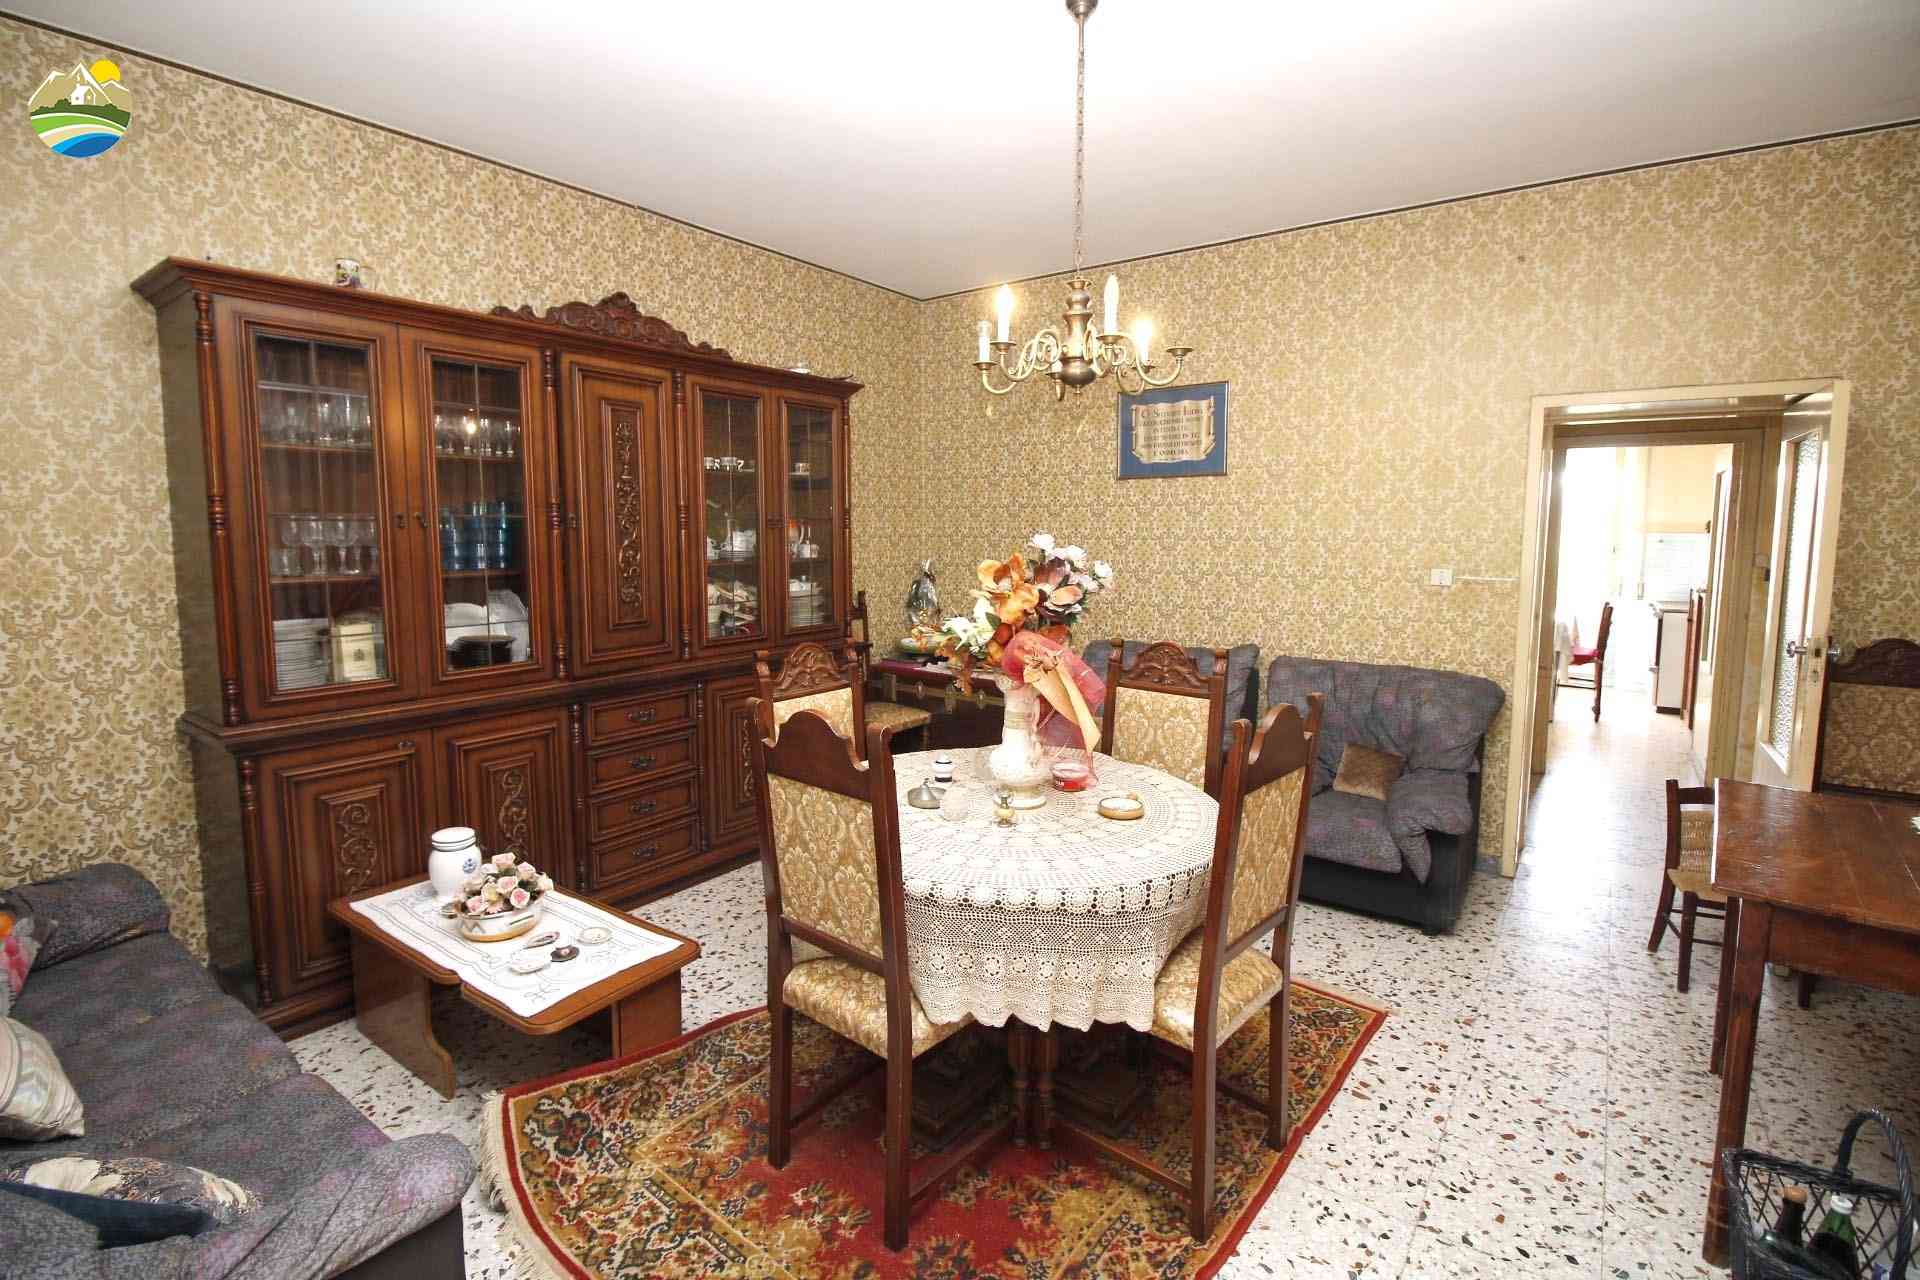 Casa di campagna Casa di campagna in vendita Bisenti (TE), Casa Montonico - Bisenti - EUR 148.473 590